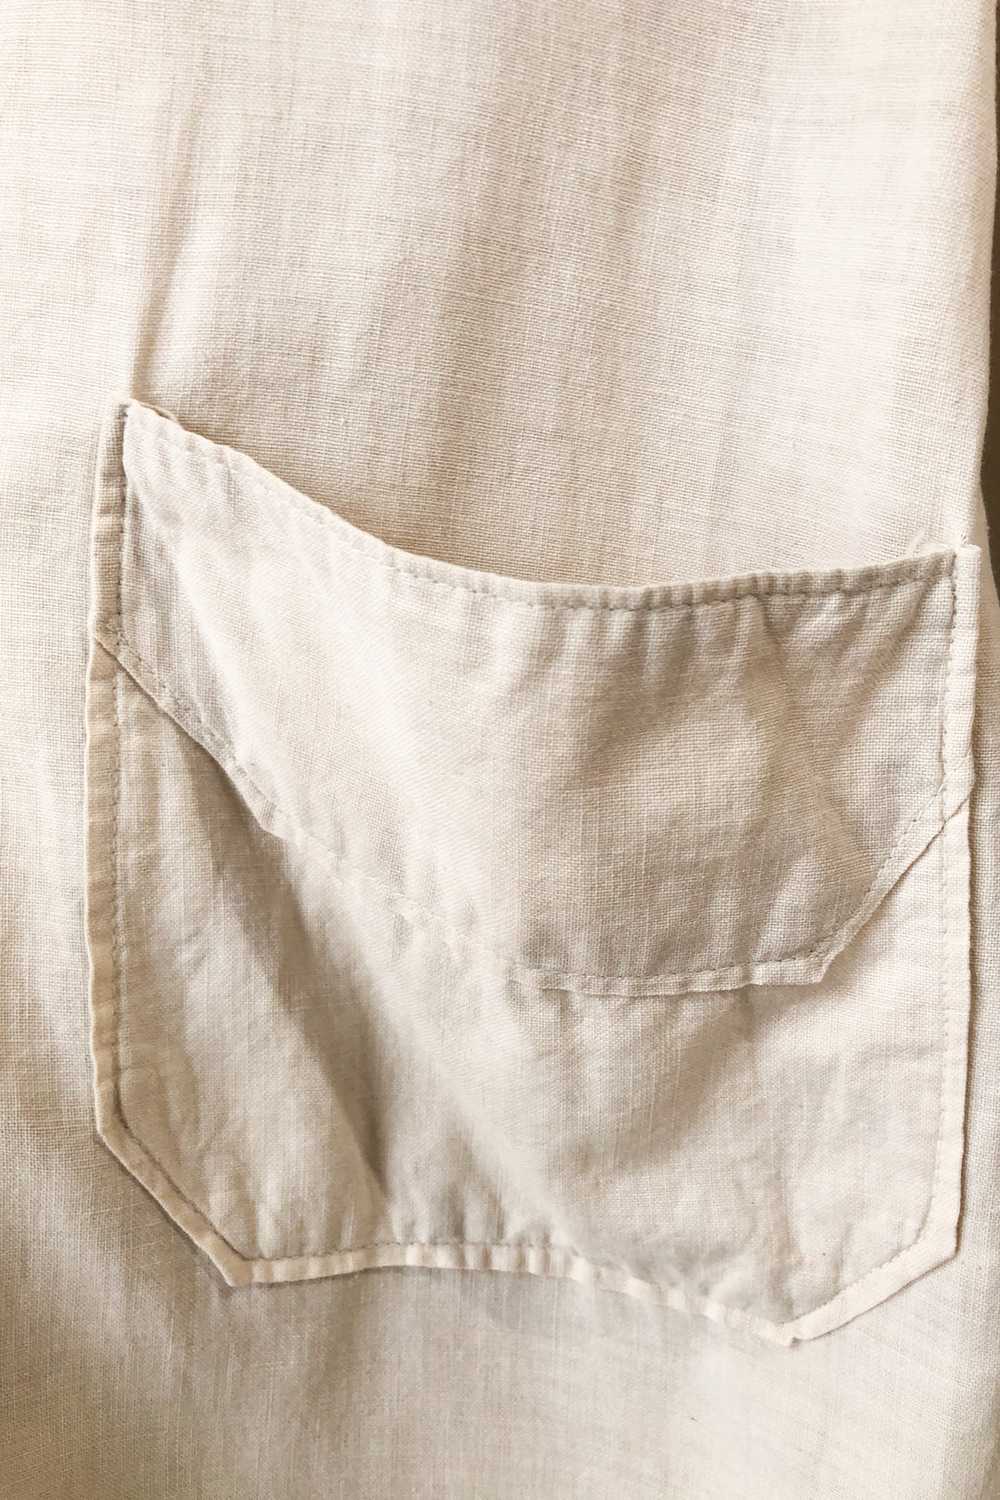 Vintage White Cotton Duster Coat - image 4